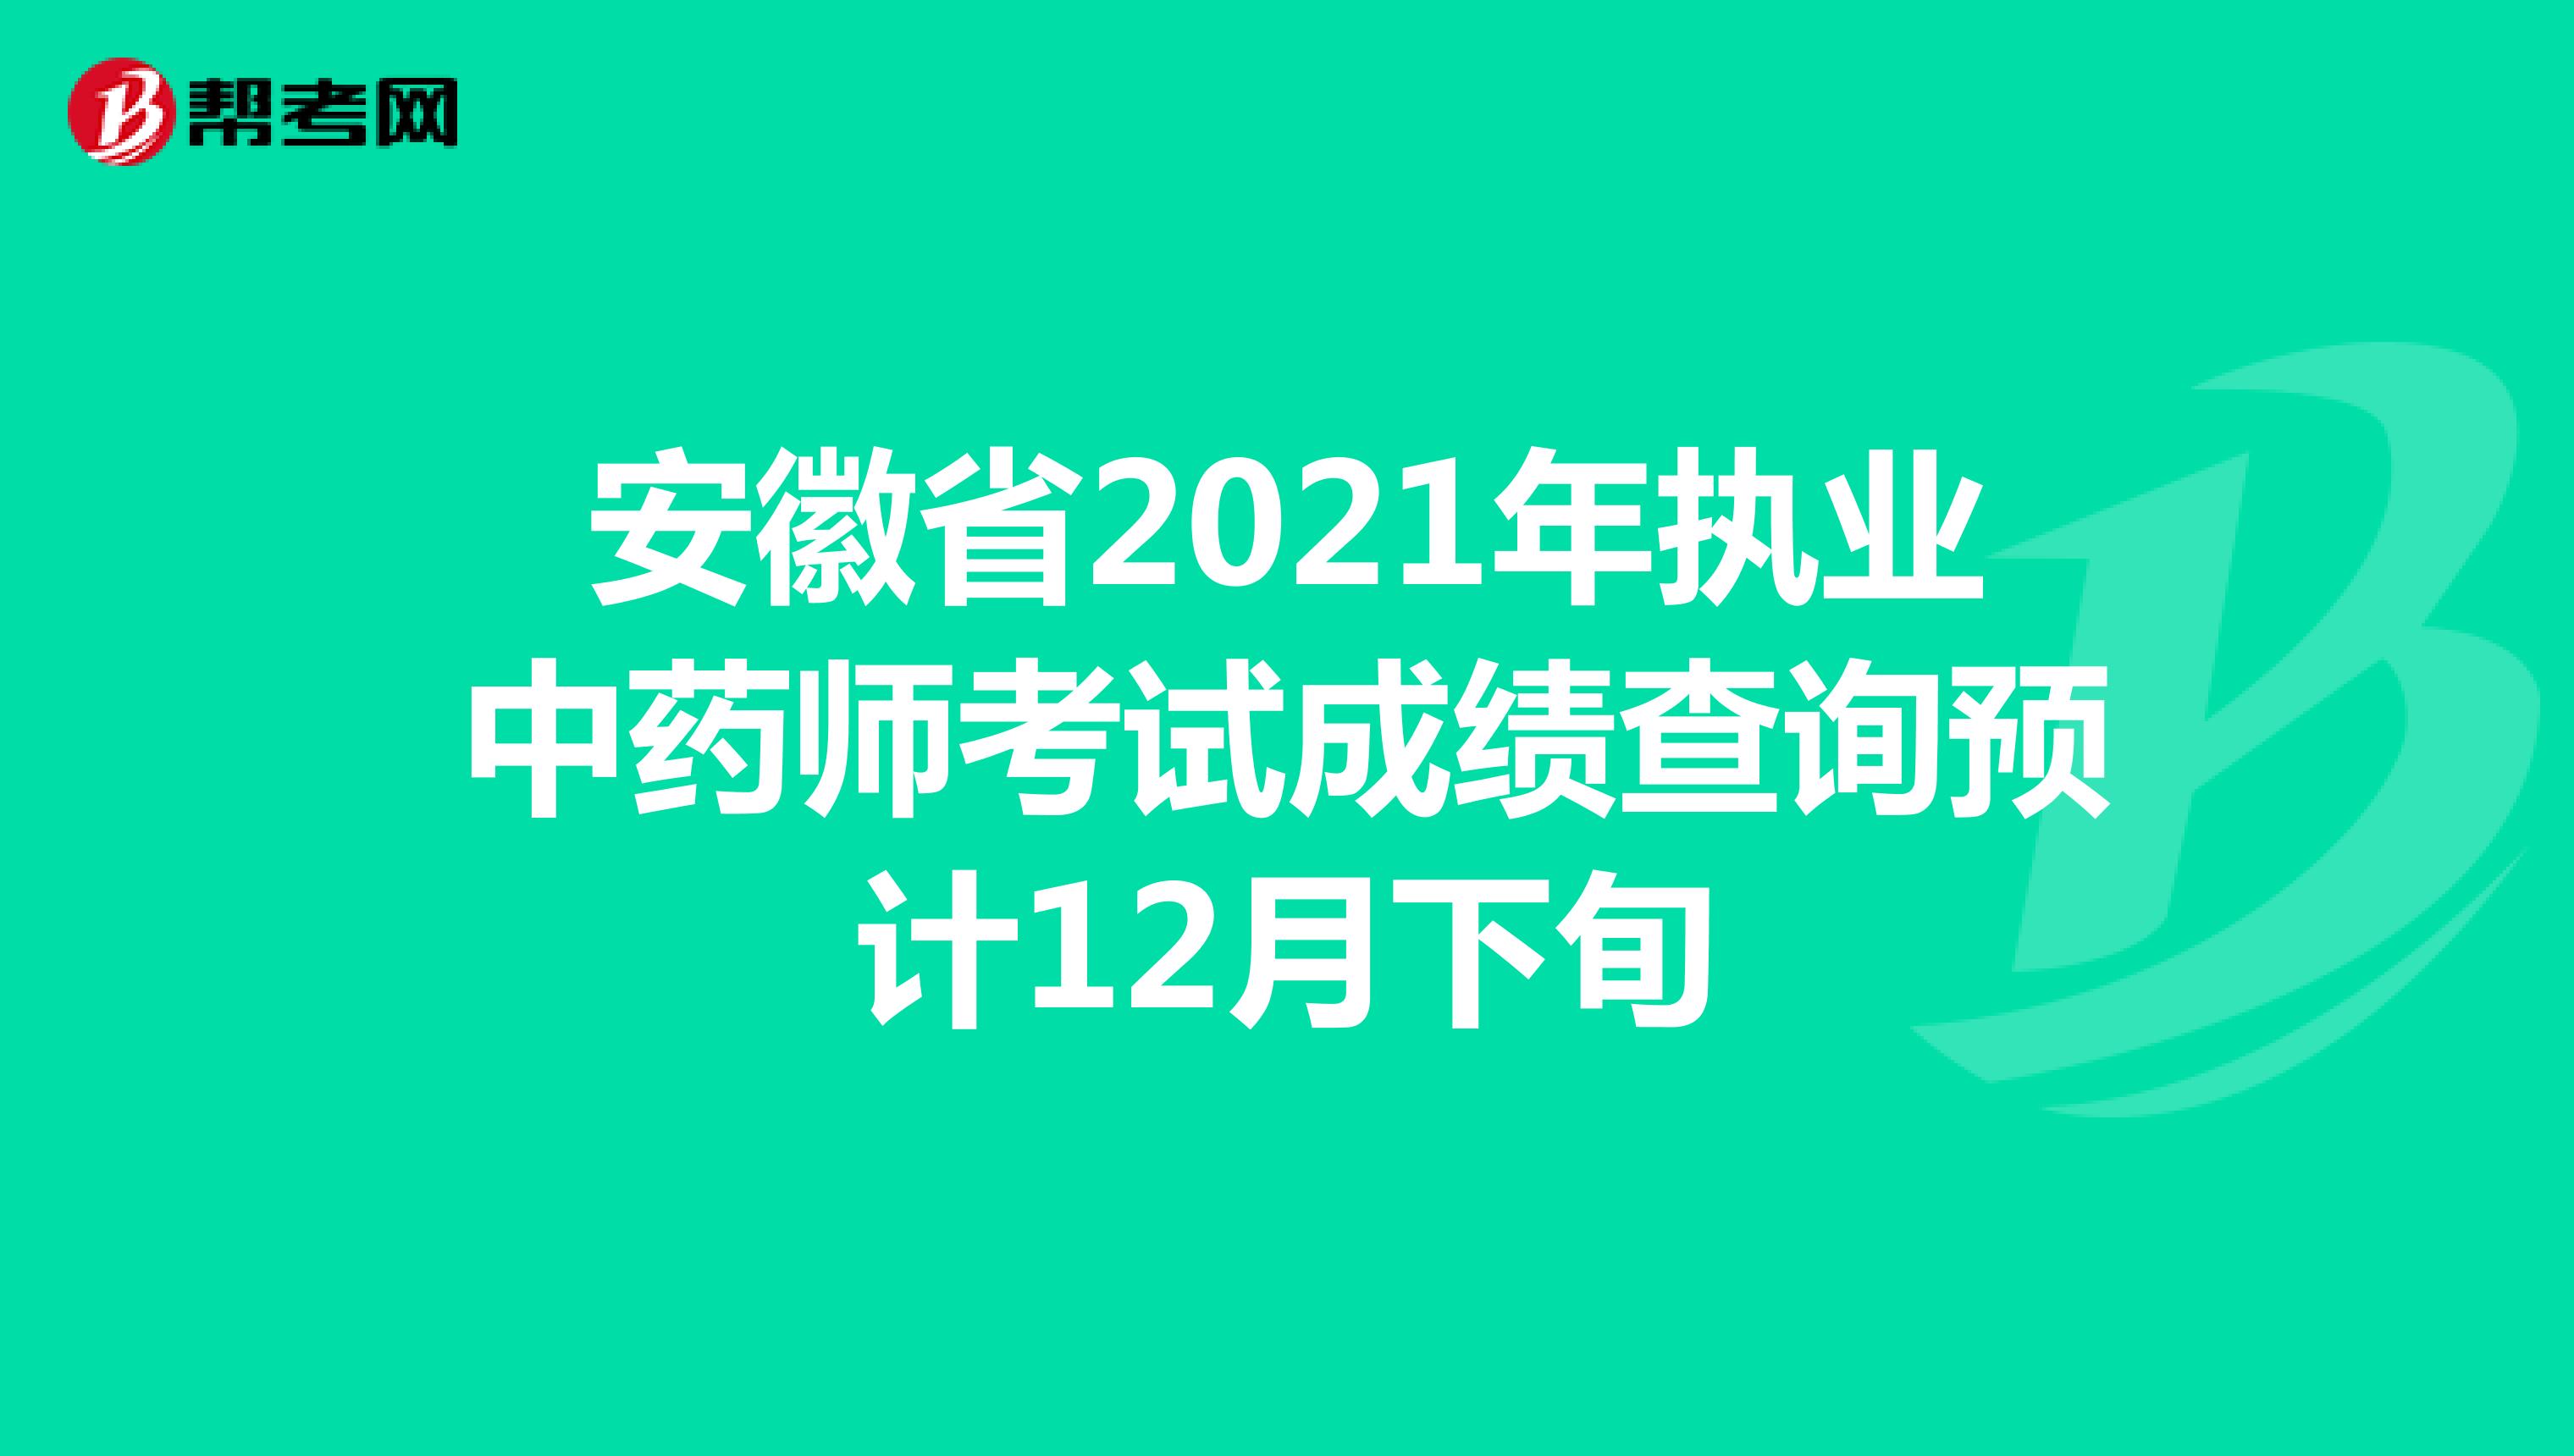 安徽省2021年执业中药师考试成绩查询预计12月下旬